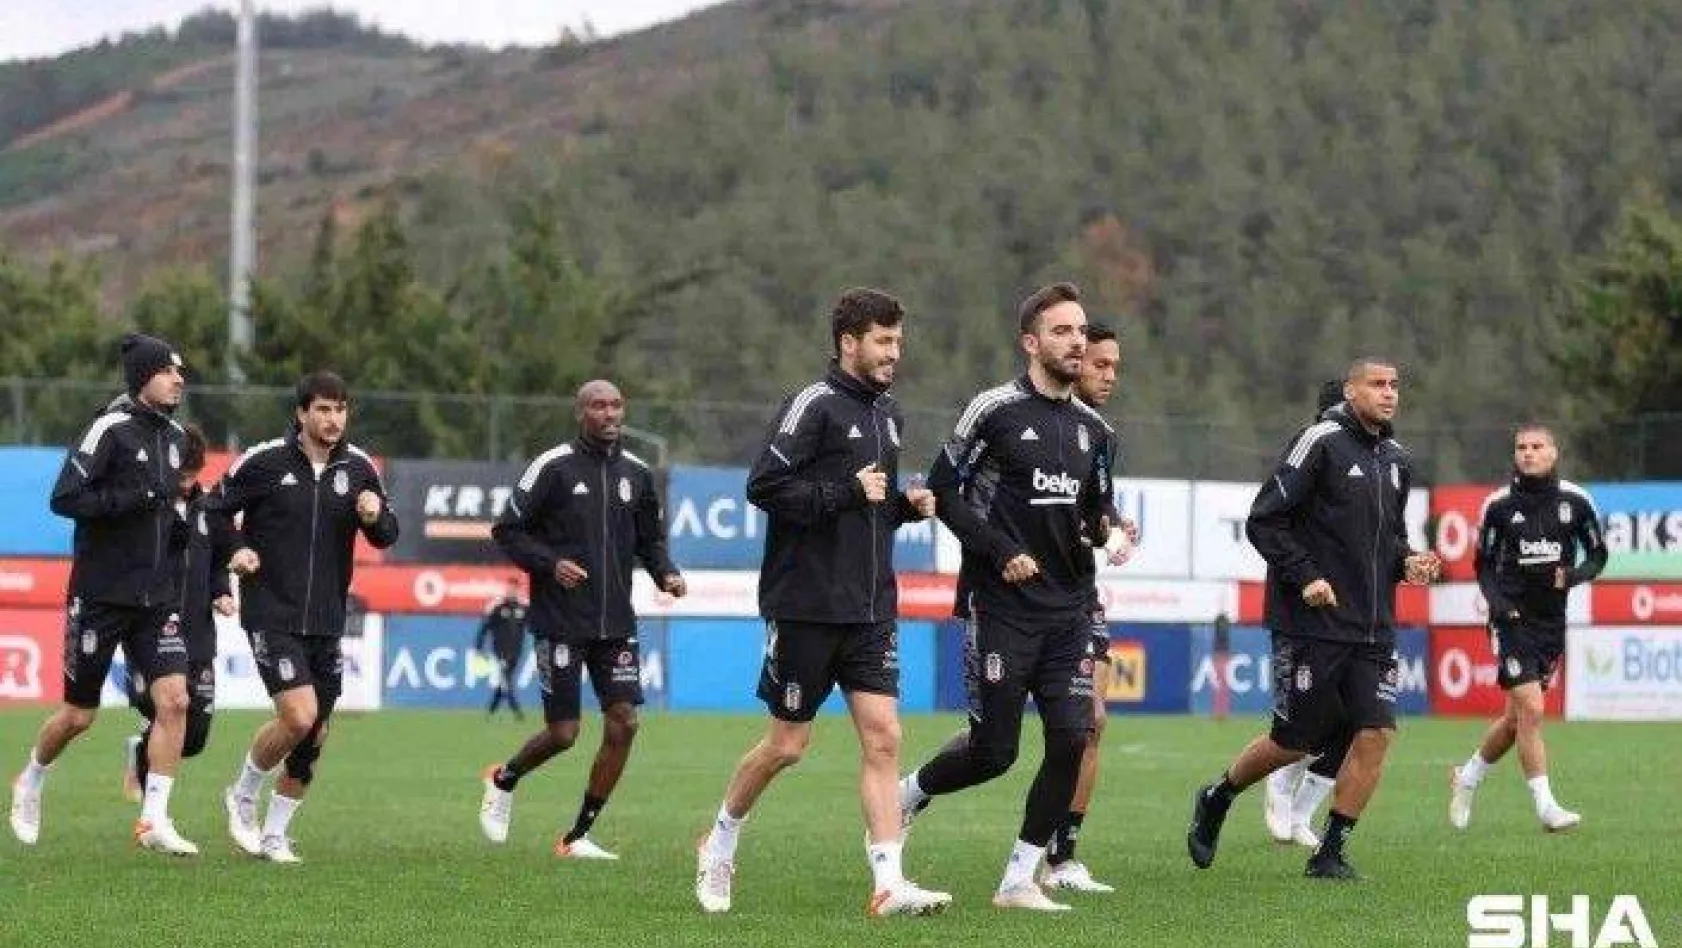 Beşiktaş, GZT Giresunspor maçı hazırlıklarına başladı